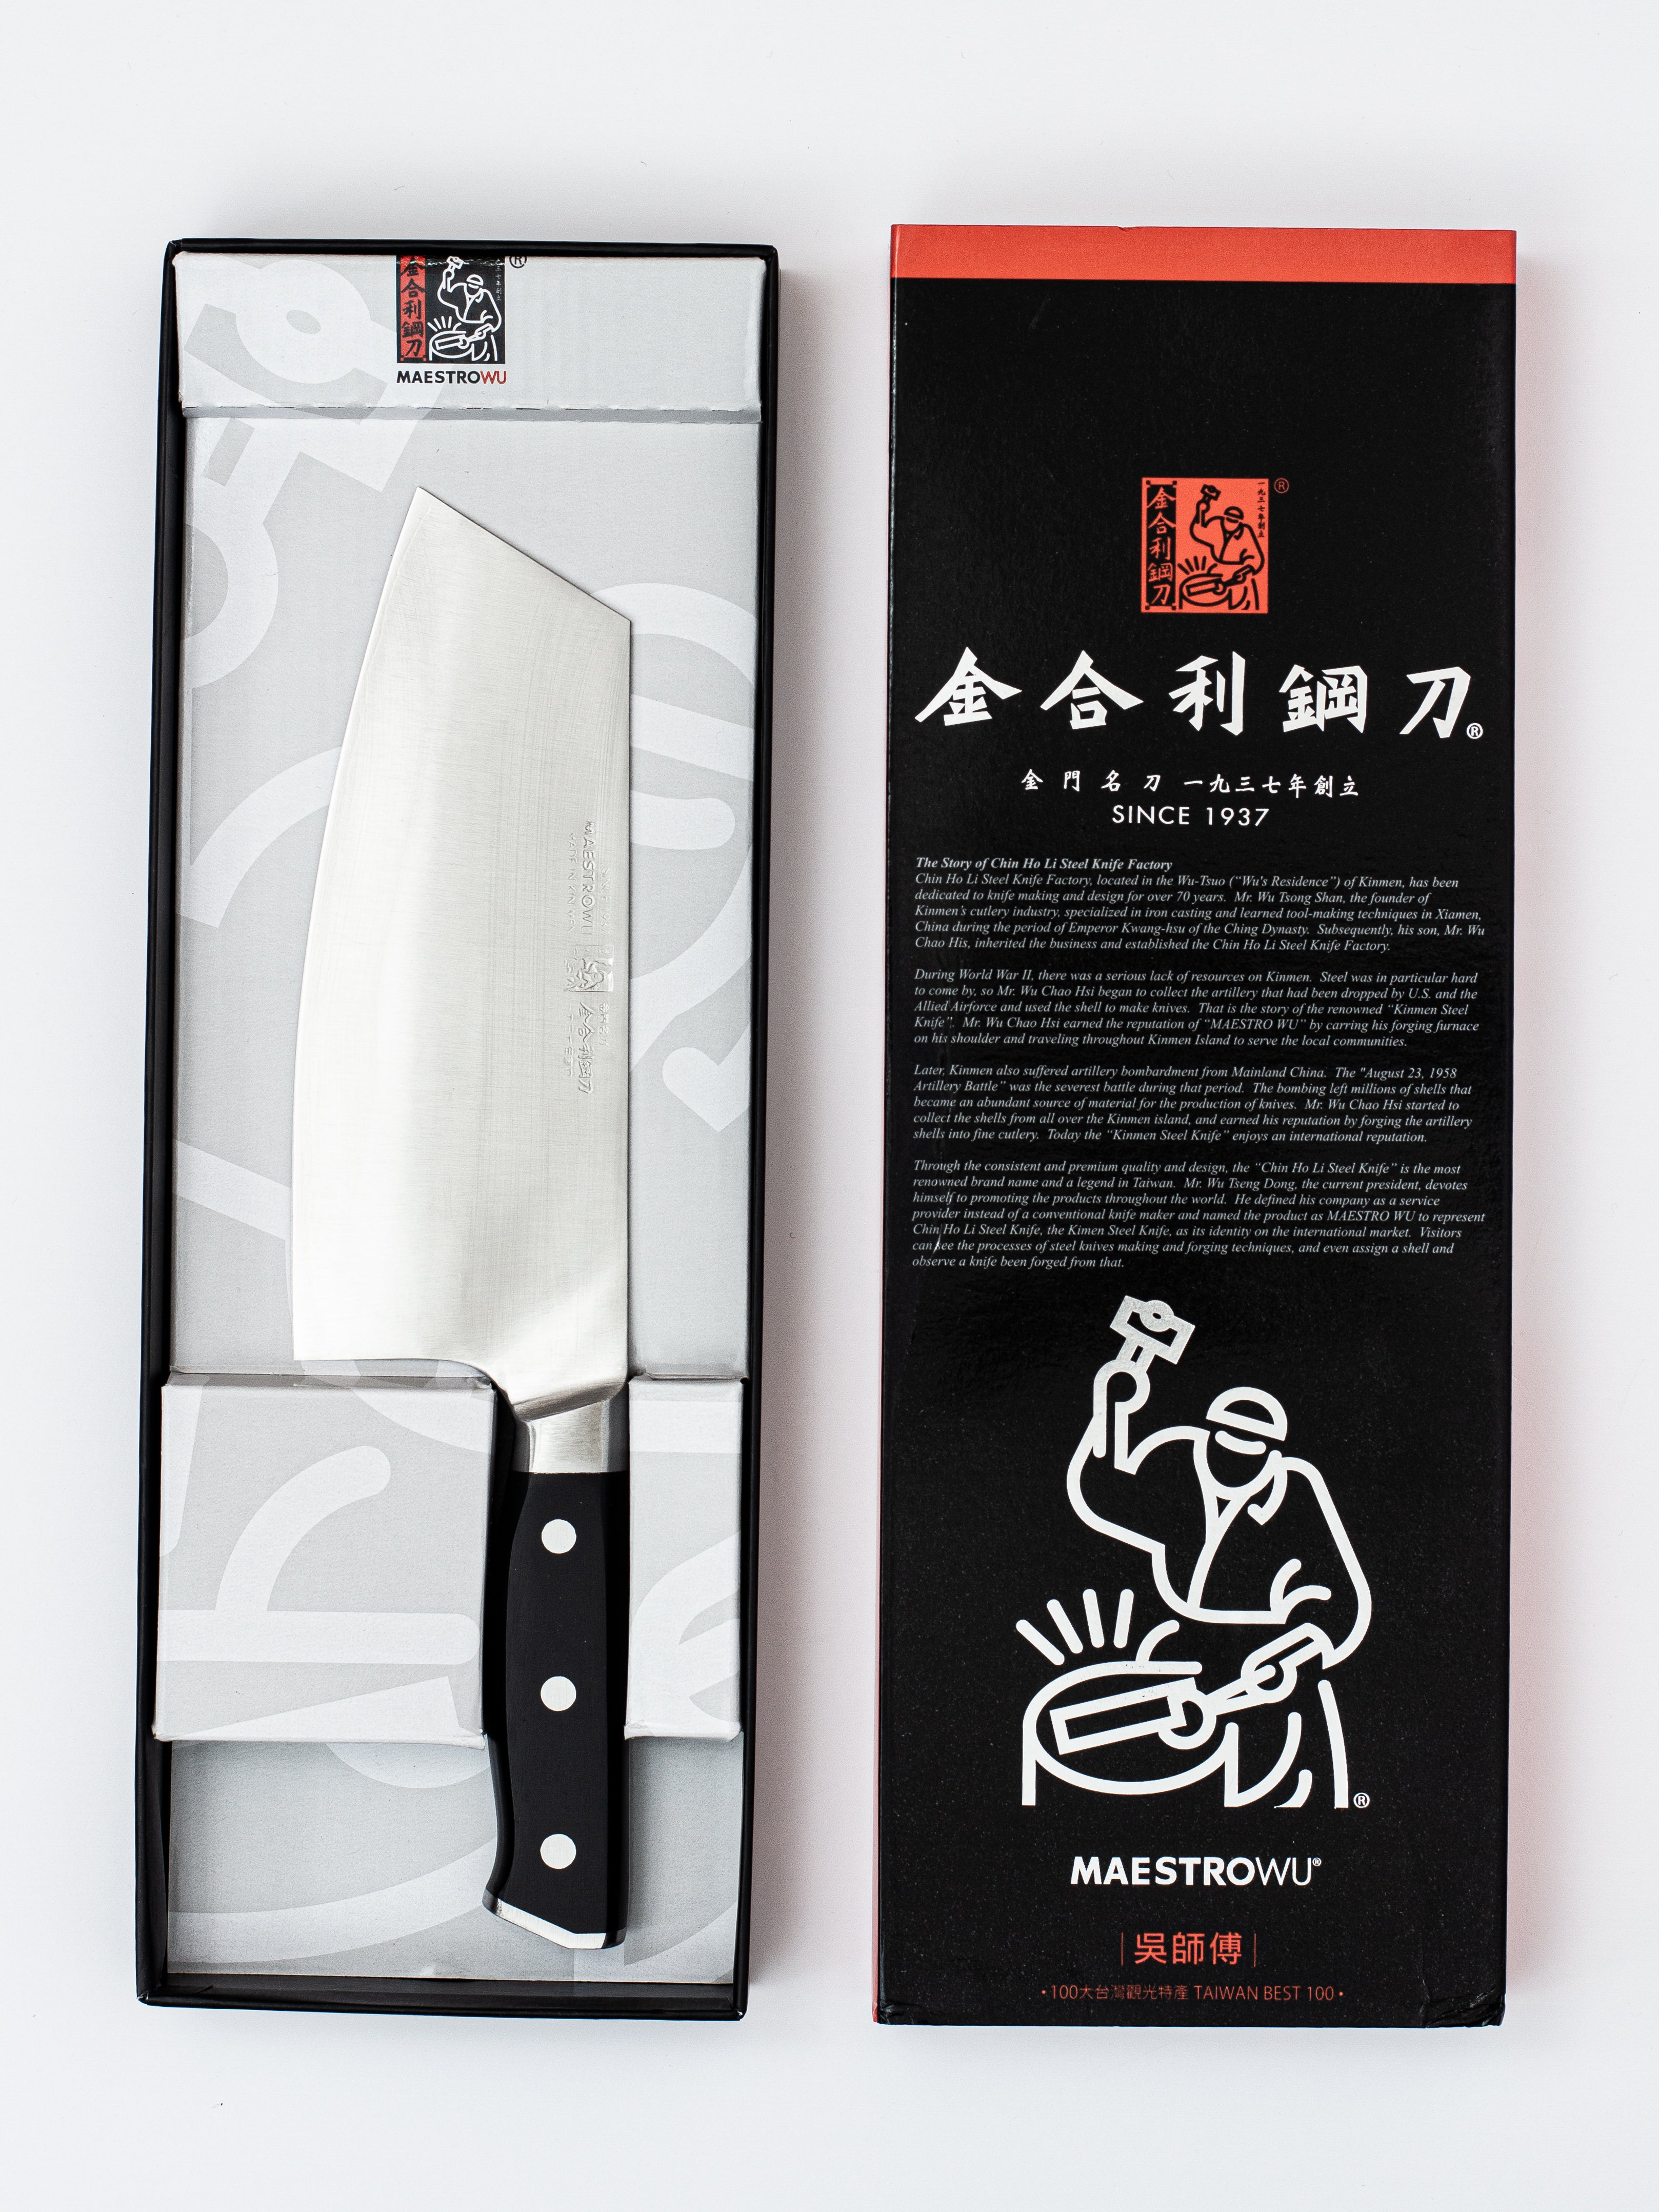 Knife Materials, knife making, knife steel, ceramic knife, chef knife,  butcher knife